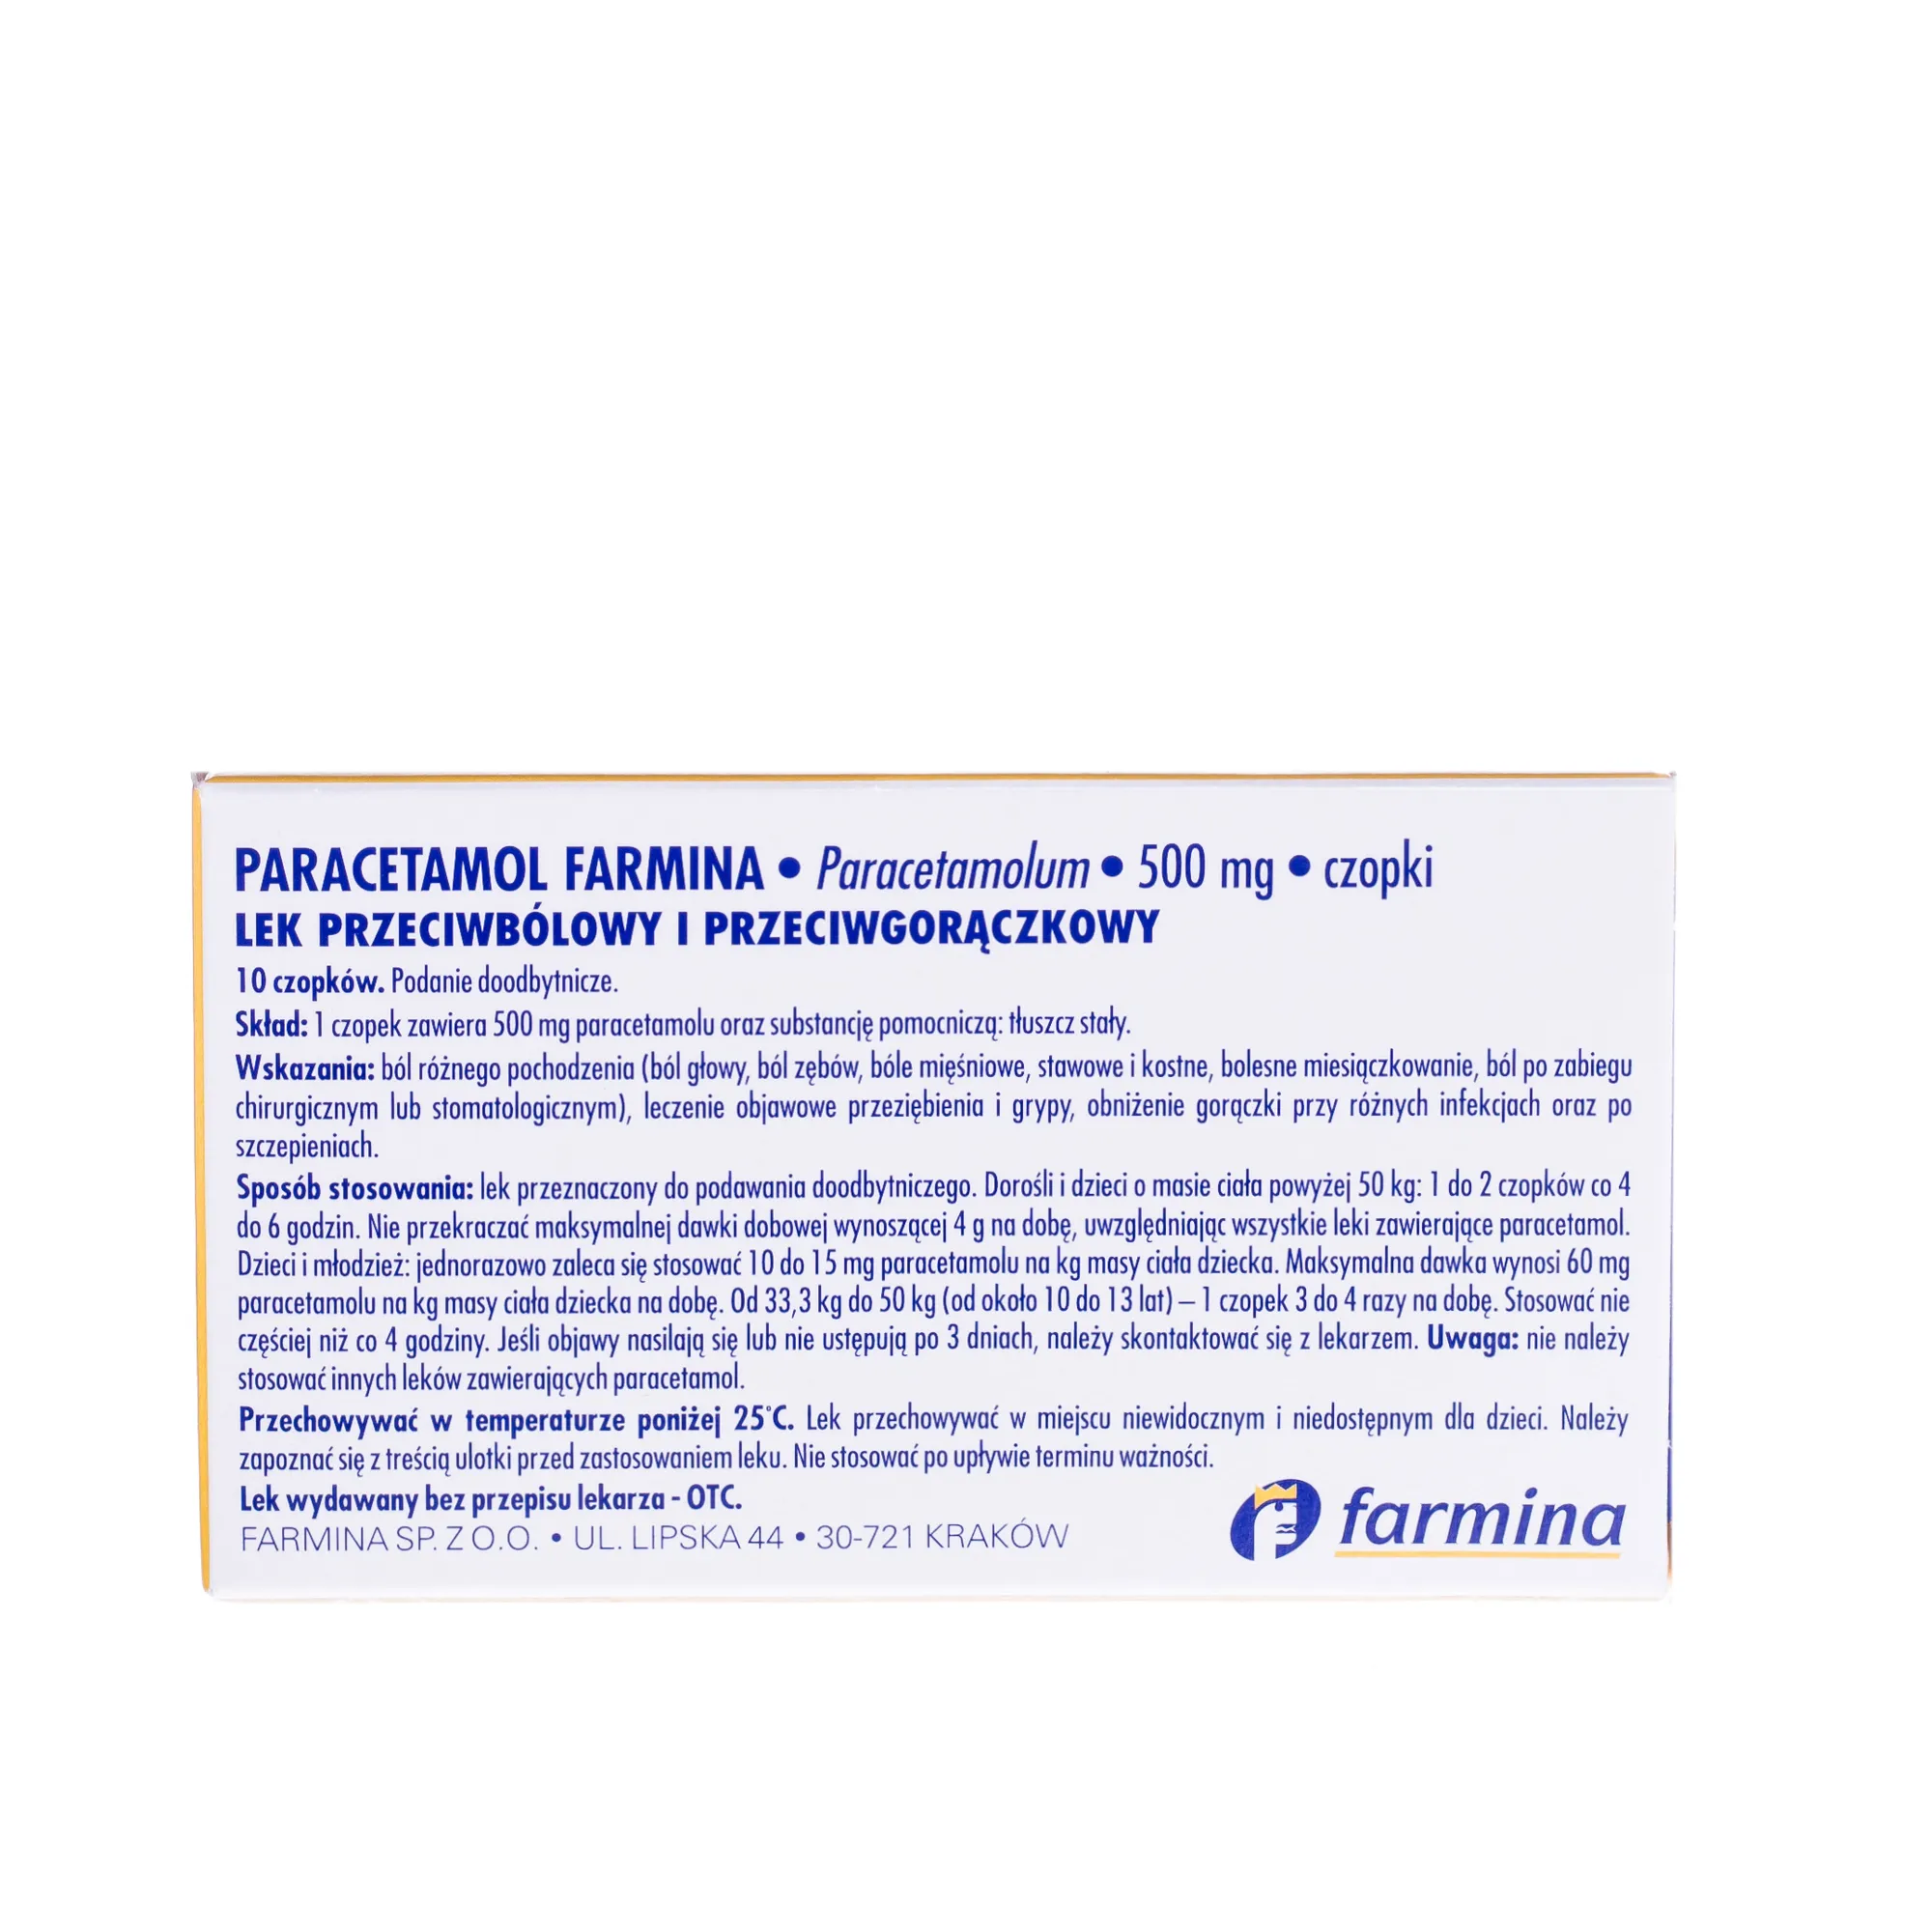 Paracetamol Farmina, 500 mg, lek przeciwbólowy, 10 czopków 